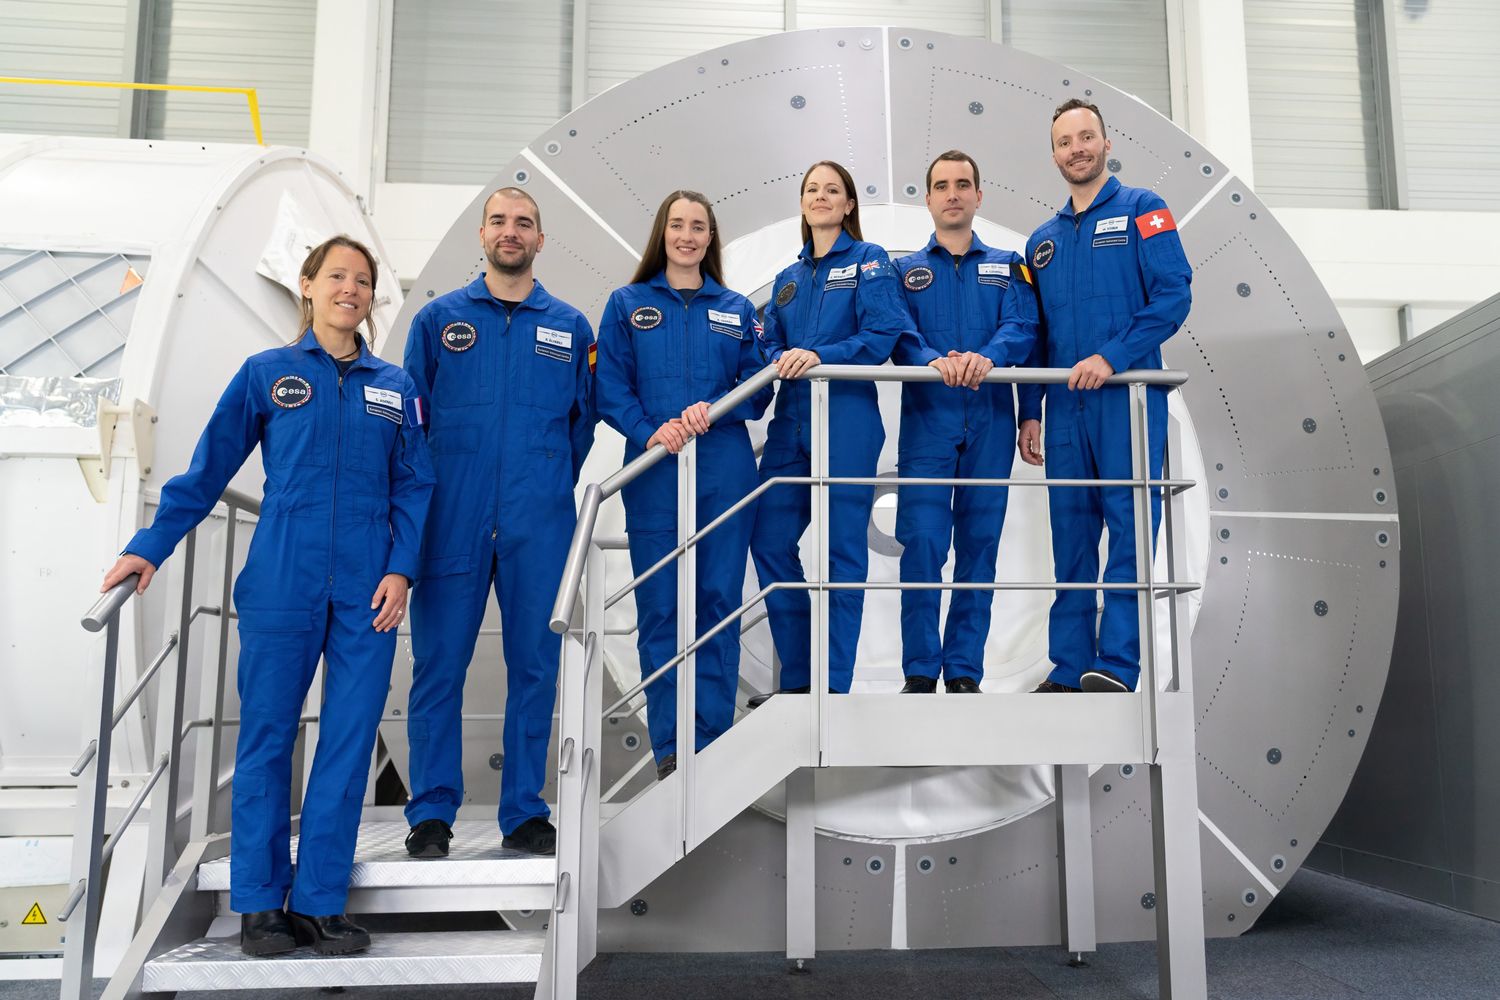 El leonés, Pablo Álvarez, será oficialmente astronauta de la ESA el próximo 22 de abril